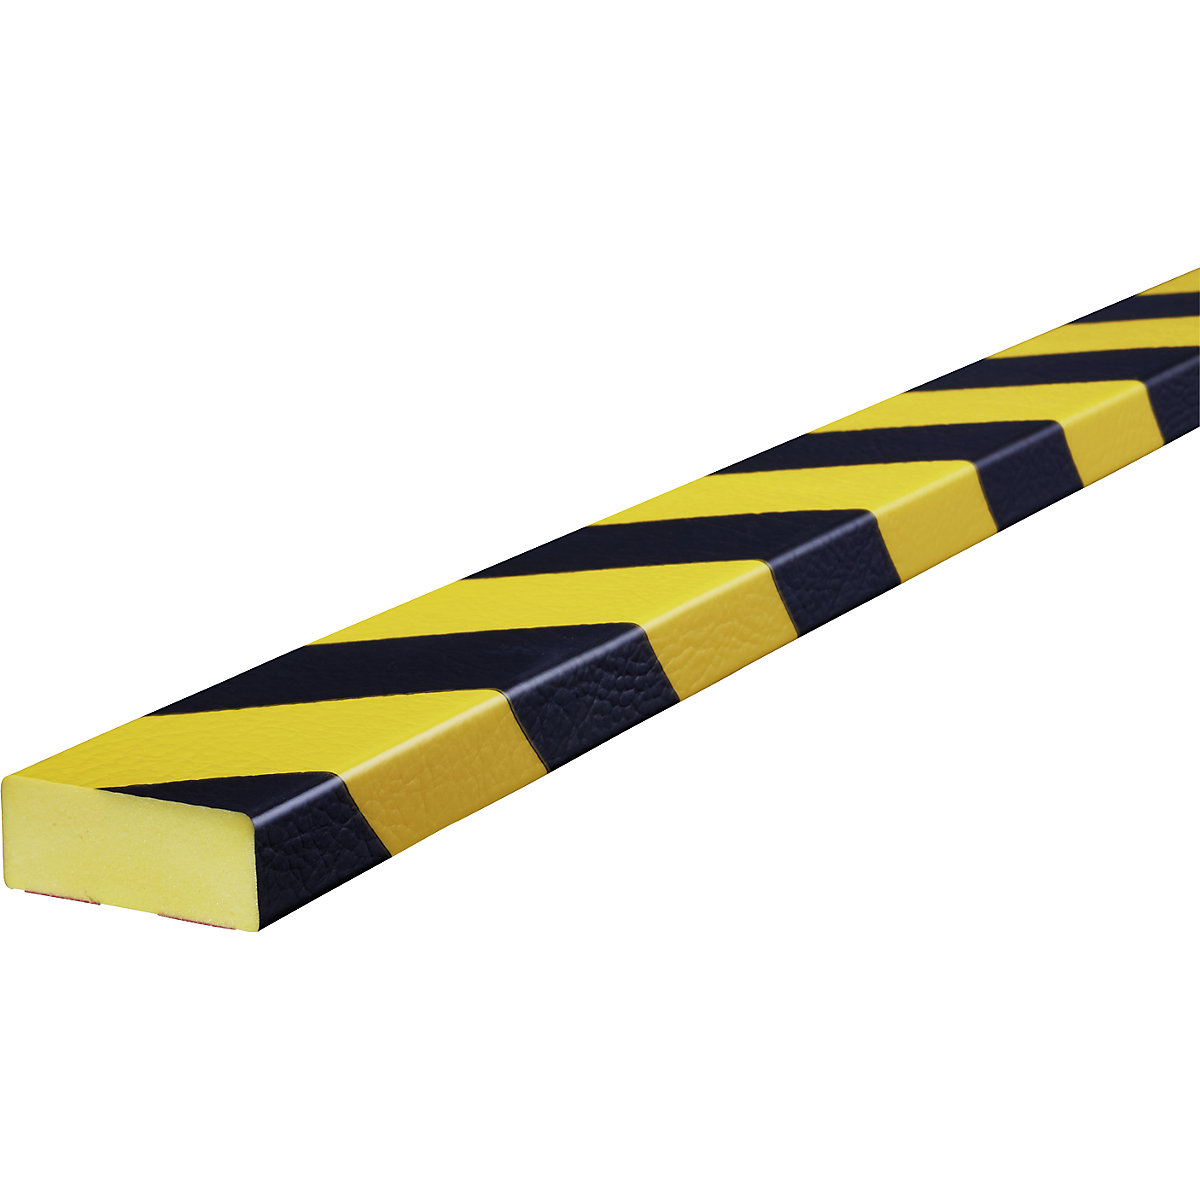 Protection des surfaces Knuffi® – SHG, type D, 1 rouleau de 5 m, noir / jaune